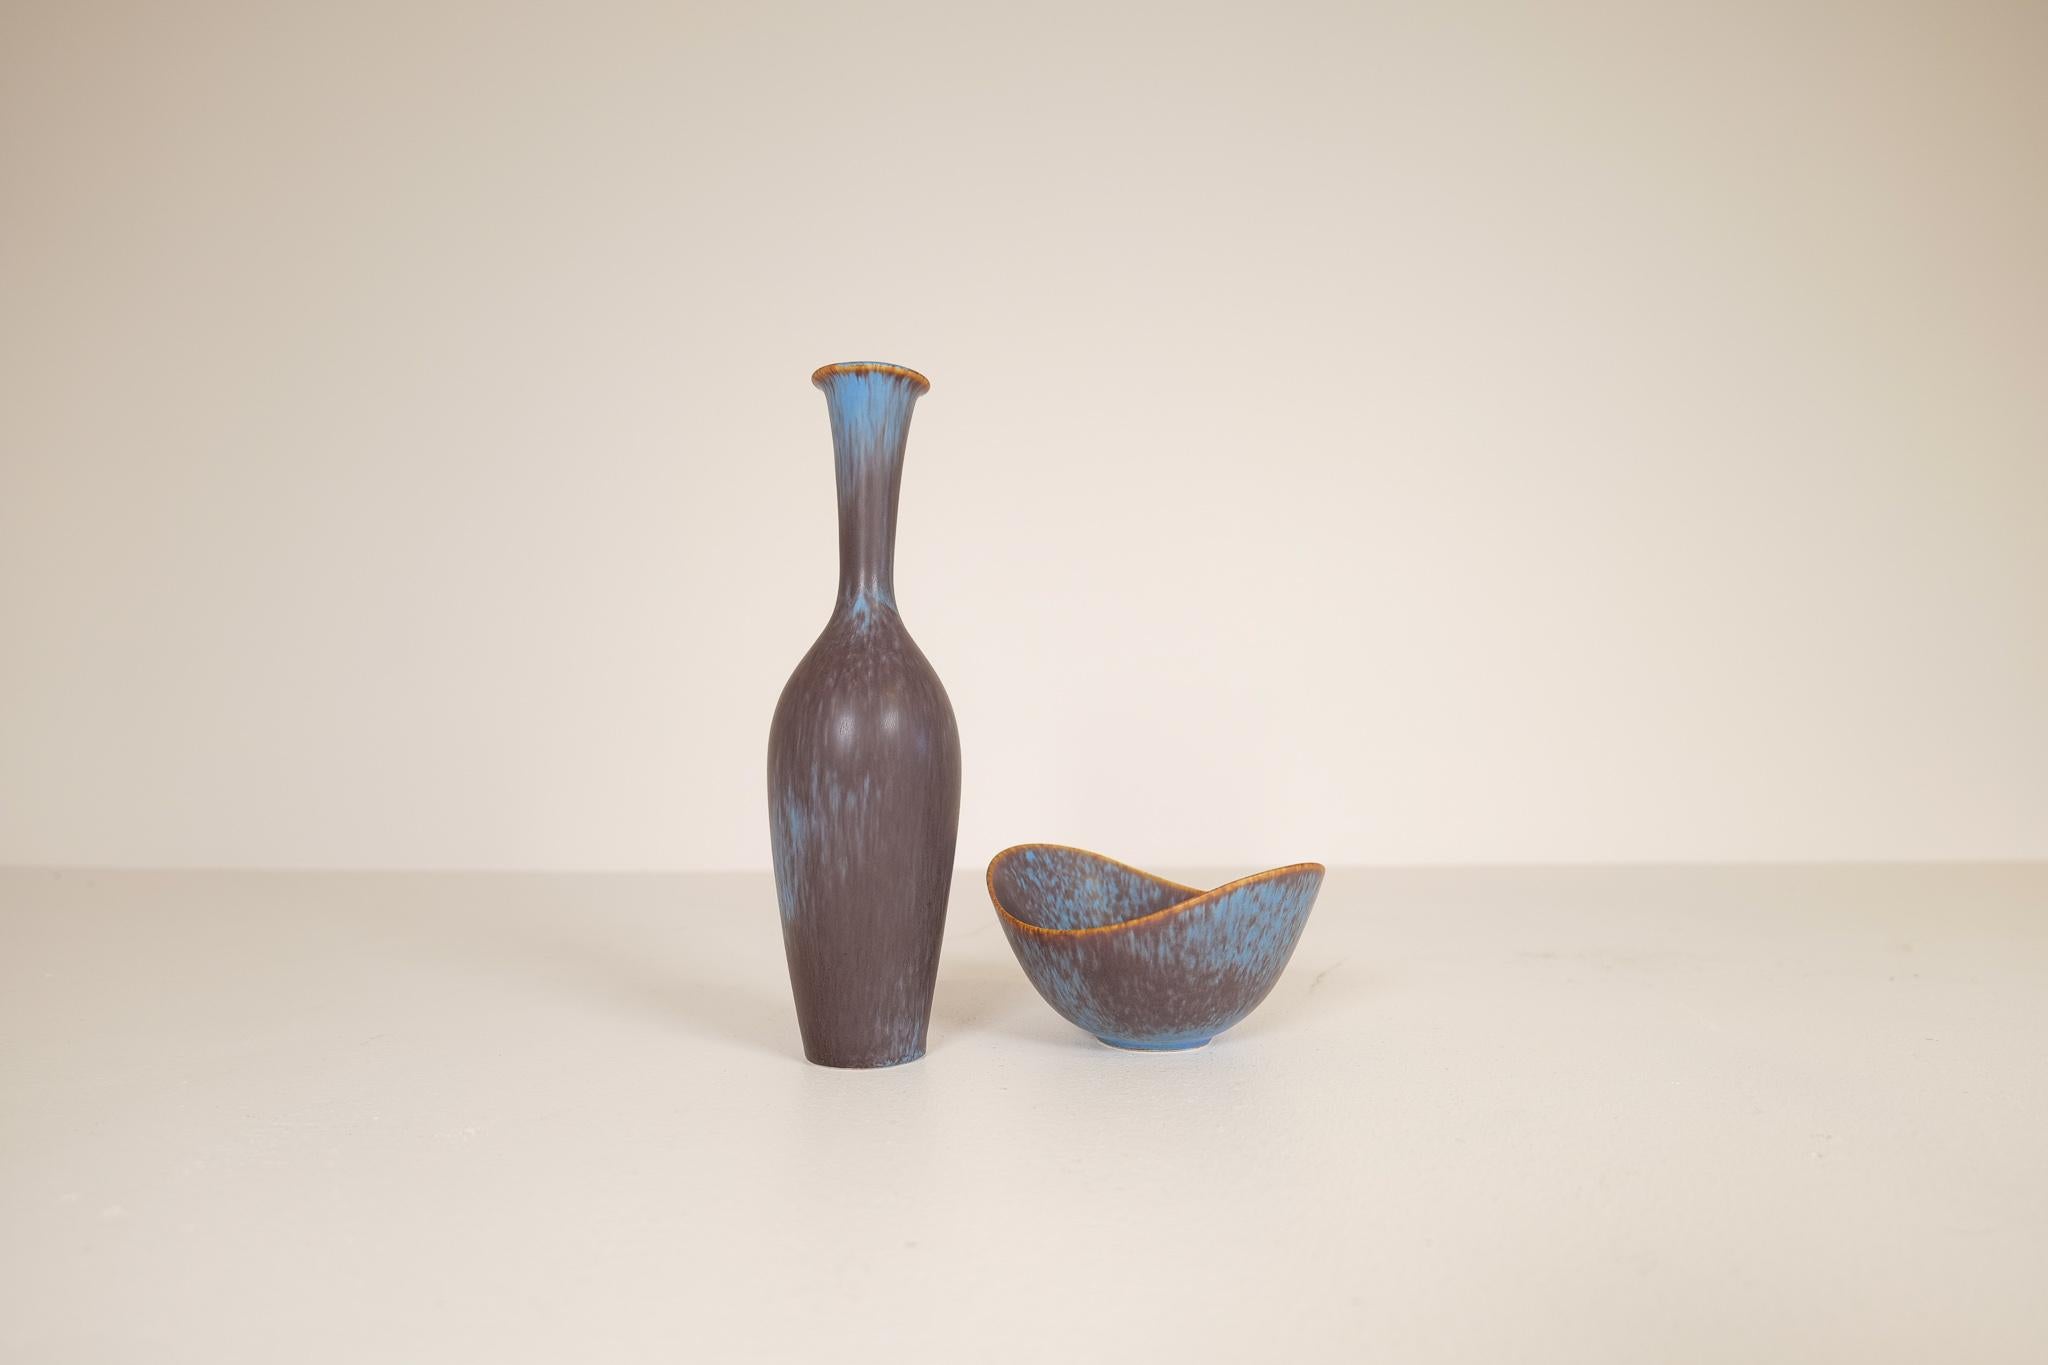 Diese wunderbare große Vase und Schale wurde von Gunnar Nylund in der Rörstrand-Fabrik in den 1950er Jahren in Schweden entworfen und gestaltet.

Die Glasur ist erstaunlich und passt wunderbar zu der Vase in Flaschenhalsform und der wunderschönen,